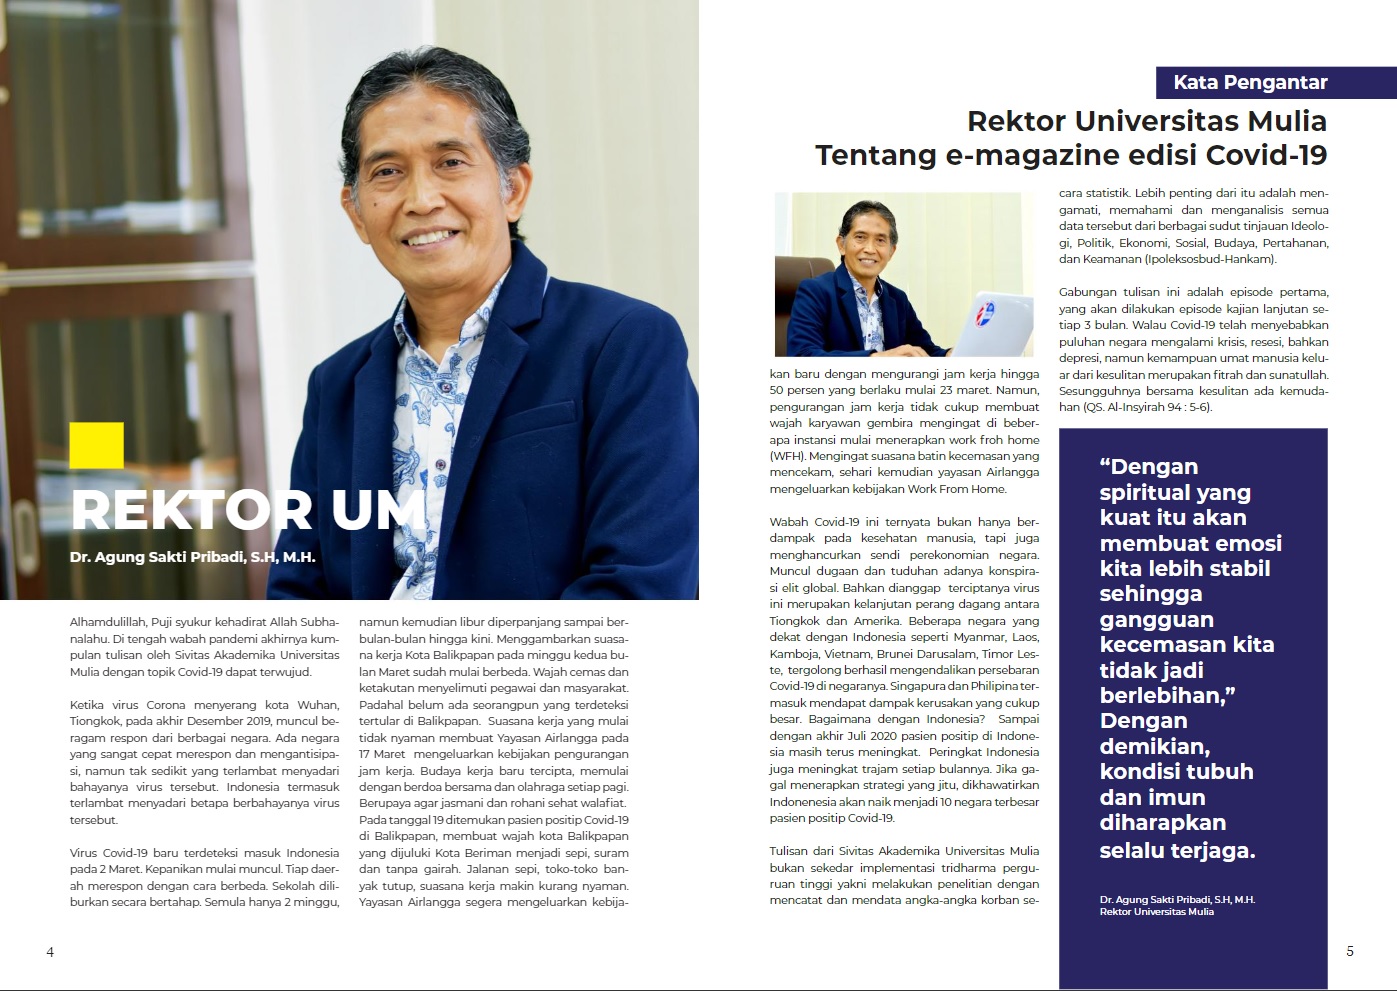 Keta Pengantar UM Magazine Edisi Perdana oleh Rektor Dr. Agung Sakti Pribadi, S.H., M.H. Foto: Tangkapan layar